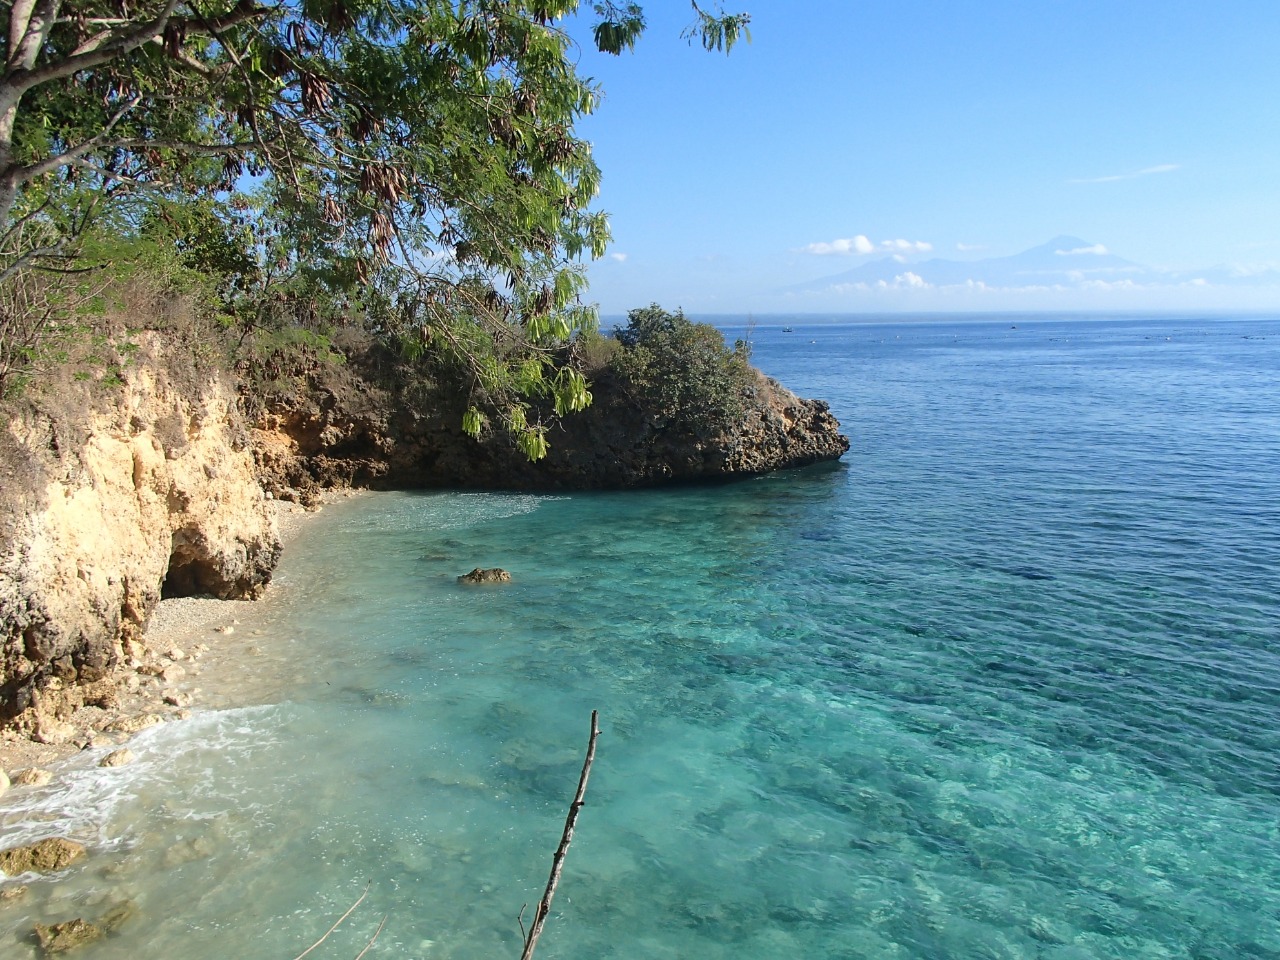 Fotografie cu Tanjung Sabui cu o suprafață de apa pură turcoaz